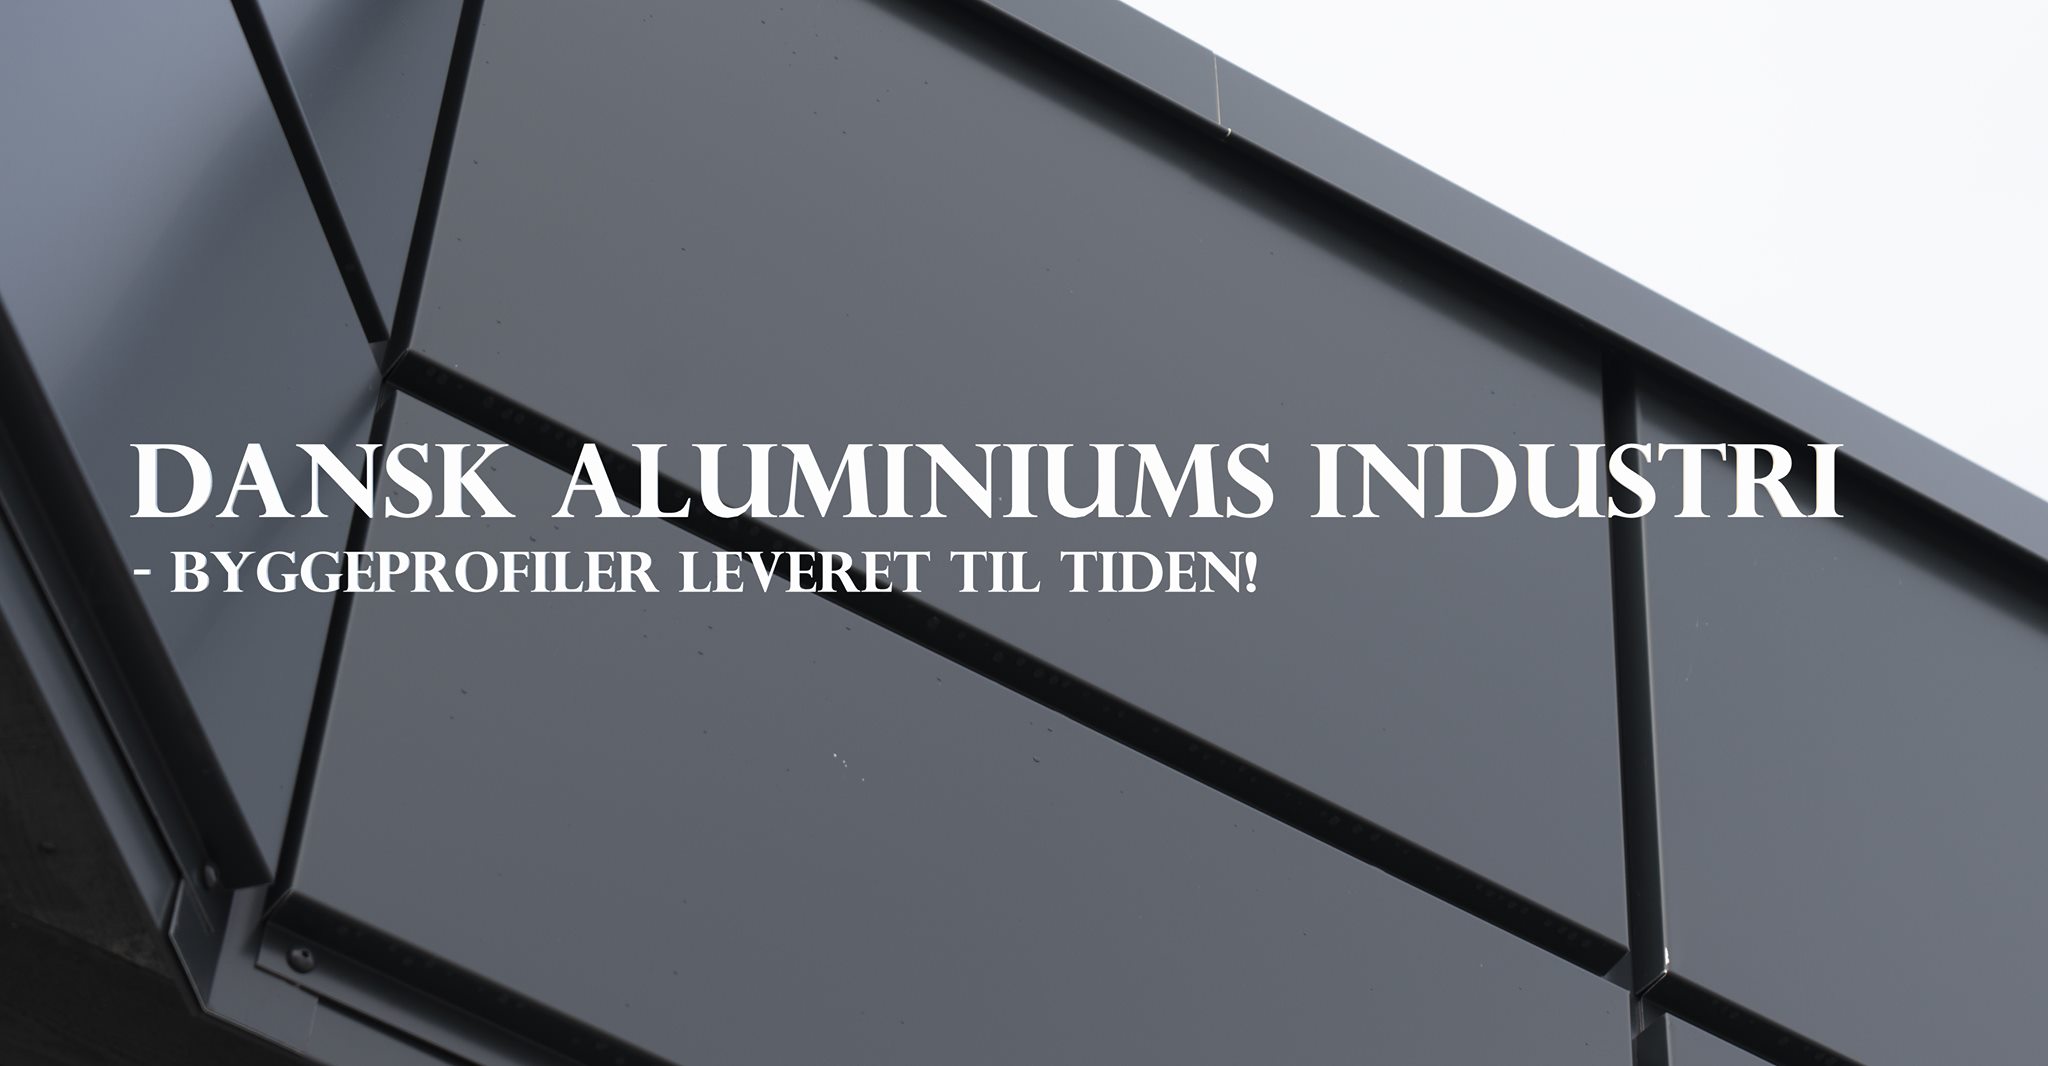 Dansk Aluminiumsindustri - aluminiumsprofiler leveret til tiden